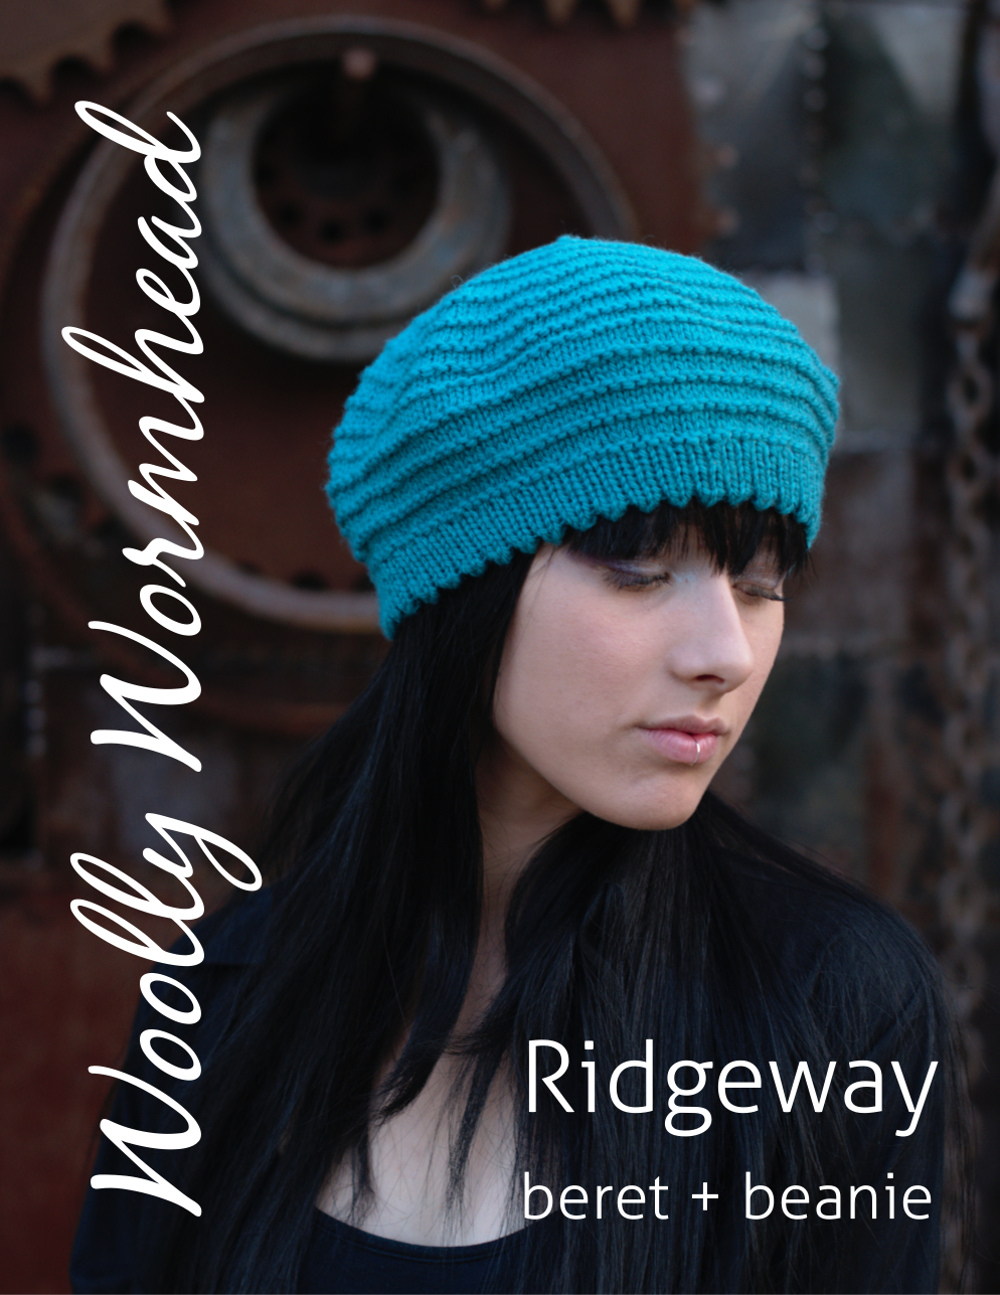 Ridgeway beret and beanie hand knitting pattern